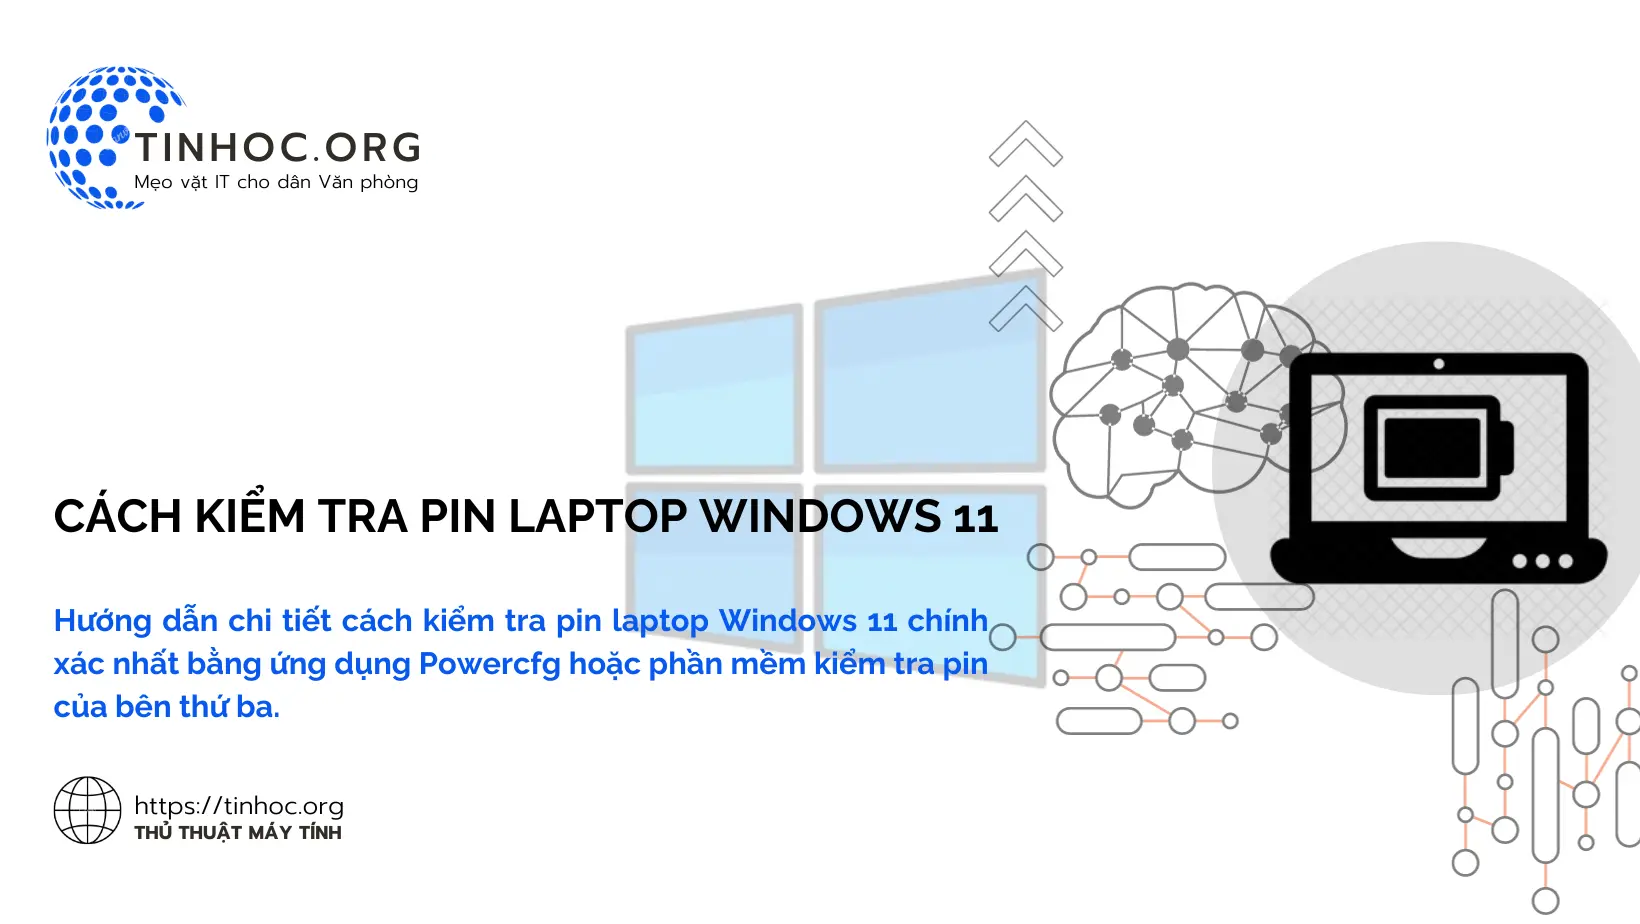 Hướng dẫn chi tiết cách kiểm tra pin laptop Windows 11 chính xác nhất bằng ứng dụng Powercfg hoặc phần mềm kiểm tra pin của bên thứ ba.